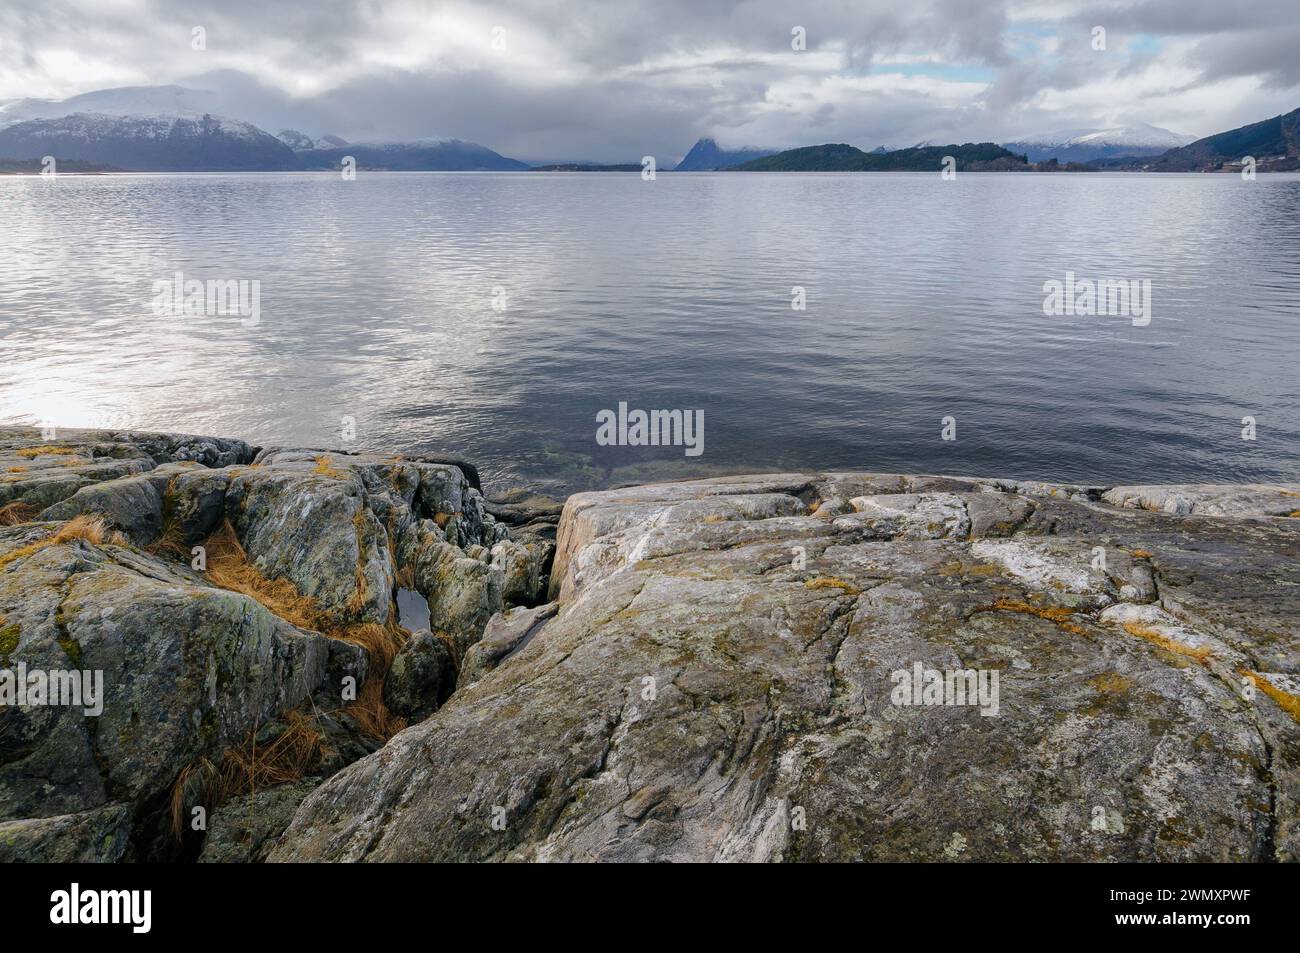 L'eau calme d'un fjord s'étend à l'horizon, bordée par une rive rocheuse et des montagnes lointaines sous un ciel nuageux. Banque D'Images